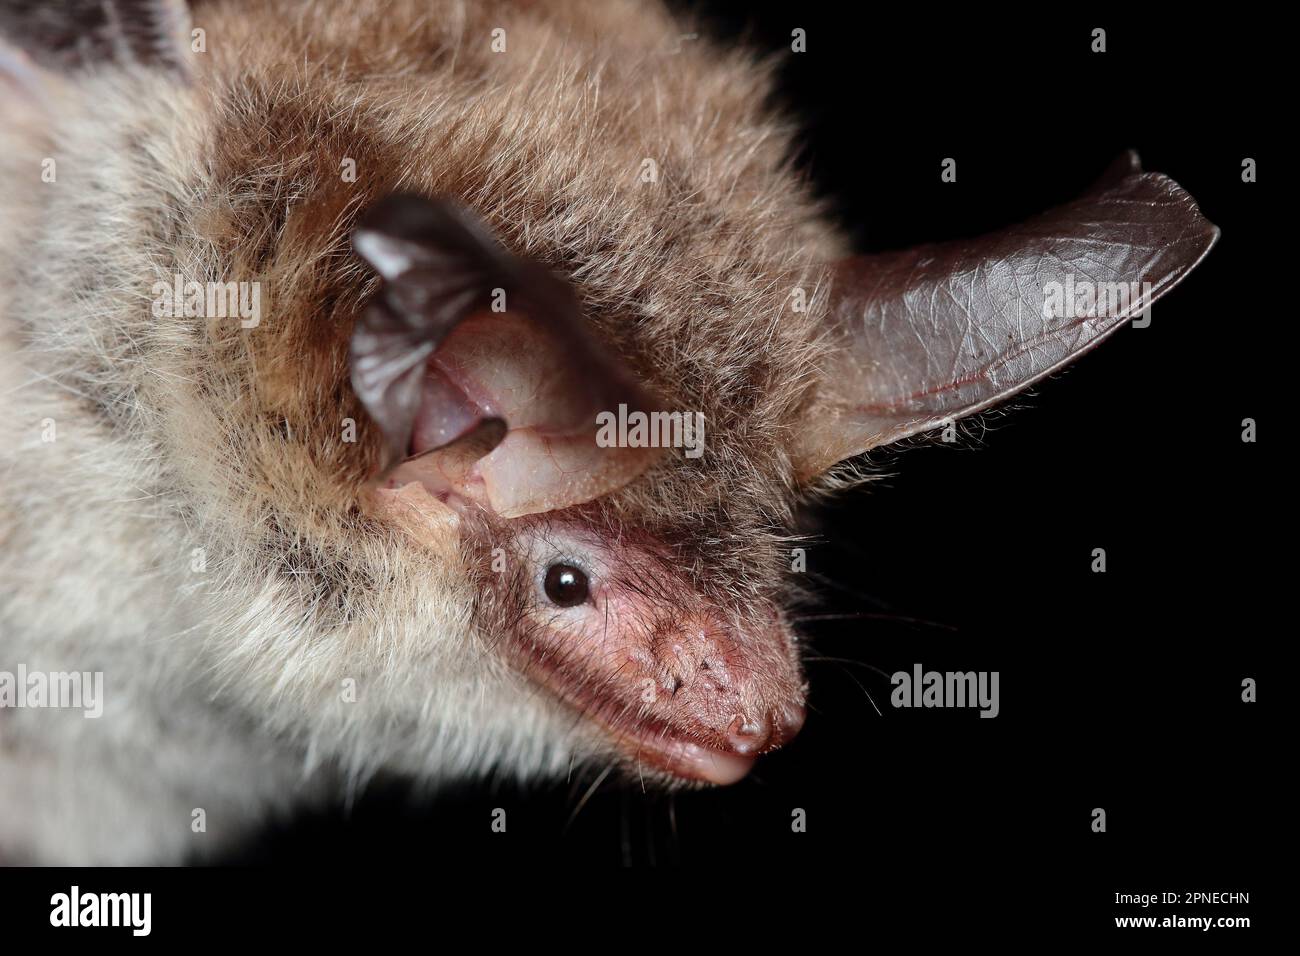 Bechstein's bat (Myotis bechsteinii) portrait in natural habitat Stock Photo